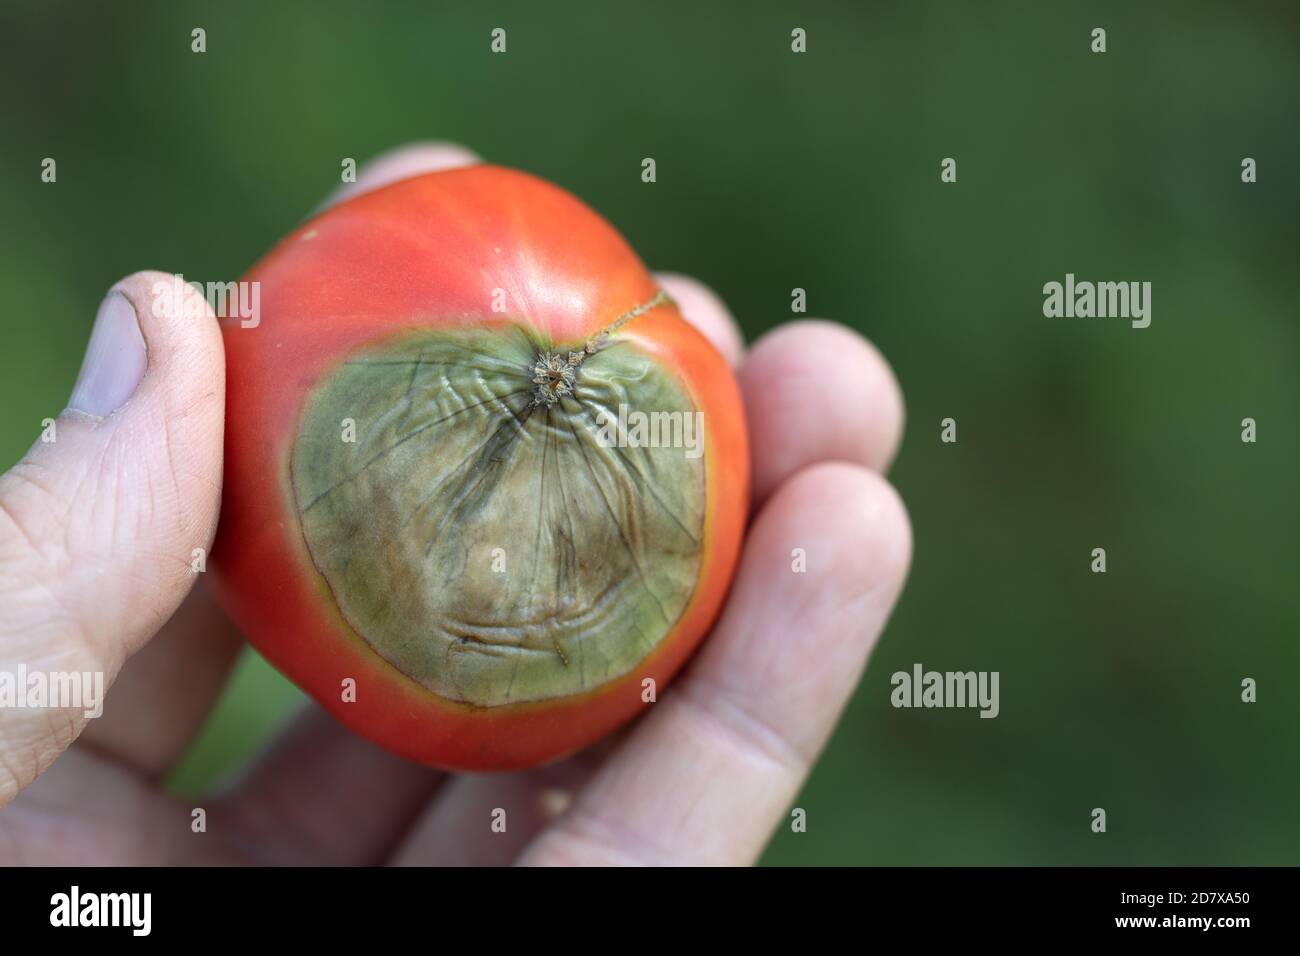 Reife rote Tomate mit verwöhnter Spitze von hellgrüner Fäule In der Hand Stockfoto